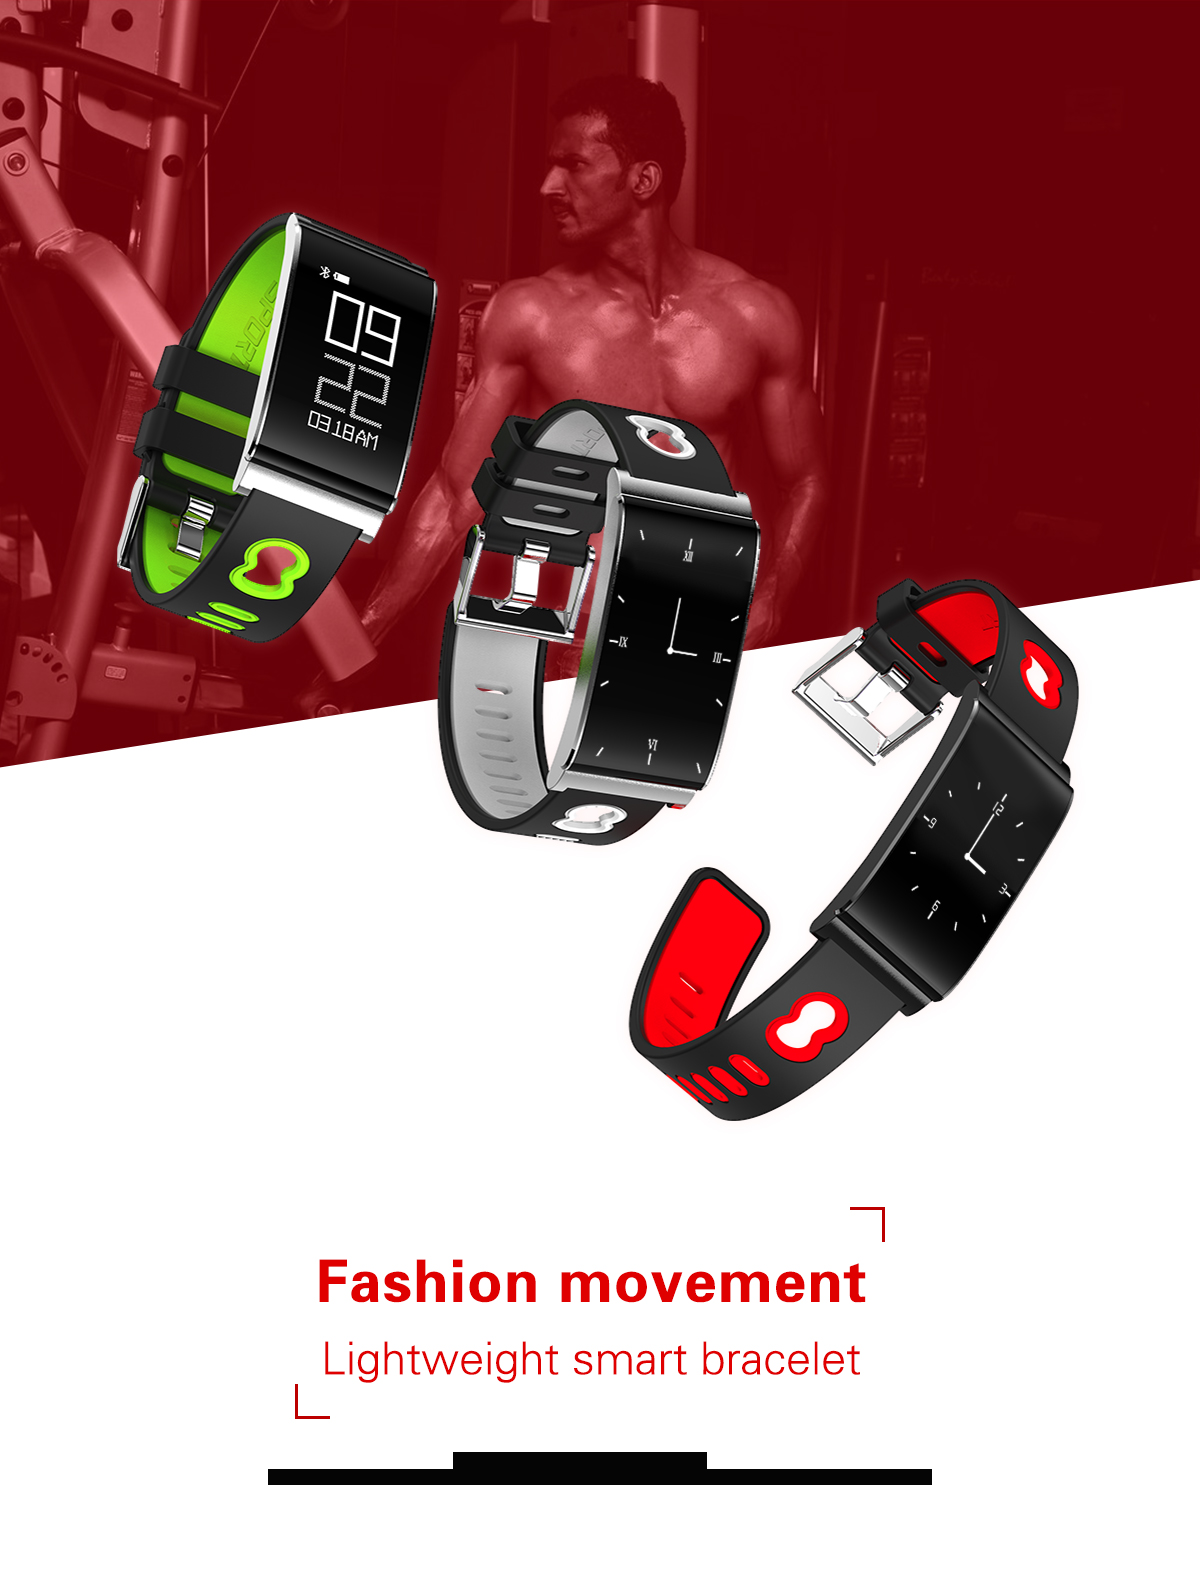 N109-OLED-Blood-Pressure-Heart-Rate-Health-Monitor-IP67-Waterproof-Smart-Watch-Bracelet-1201265